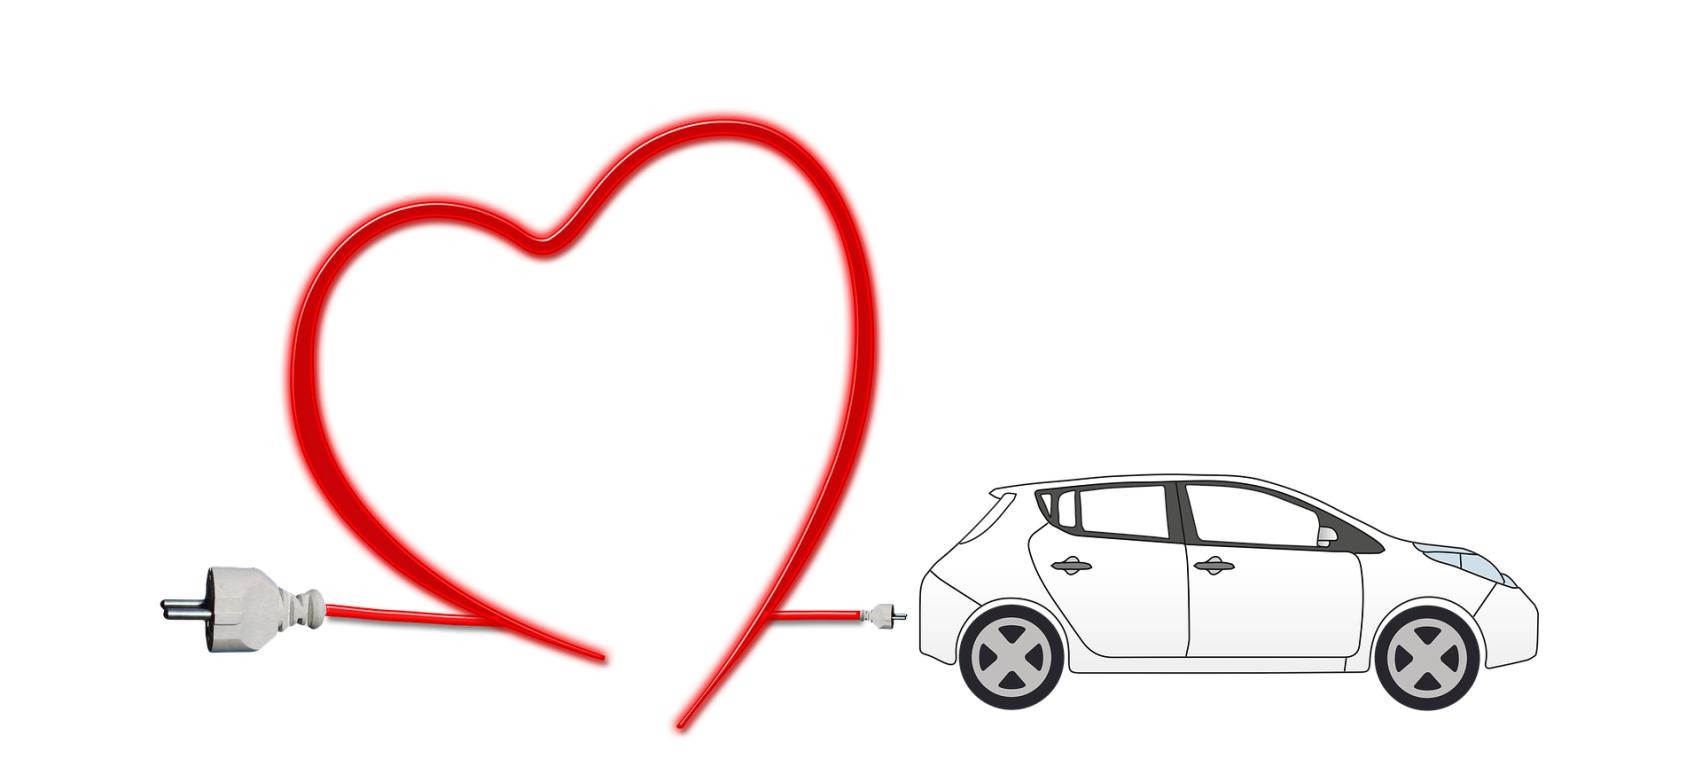 Elektroauto, dessen rotes Ladekabel ein Herz formt